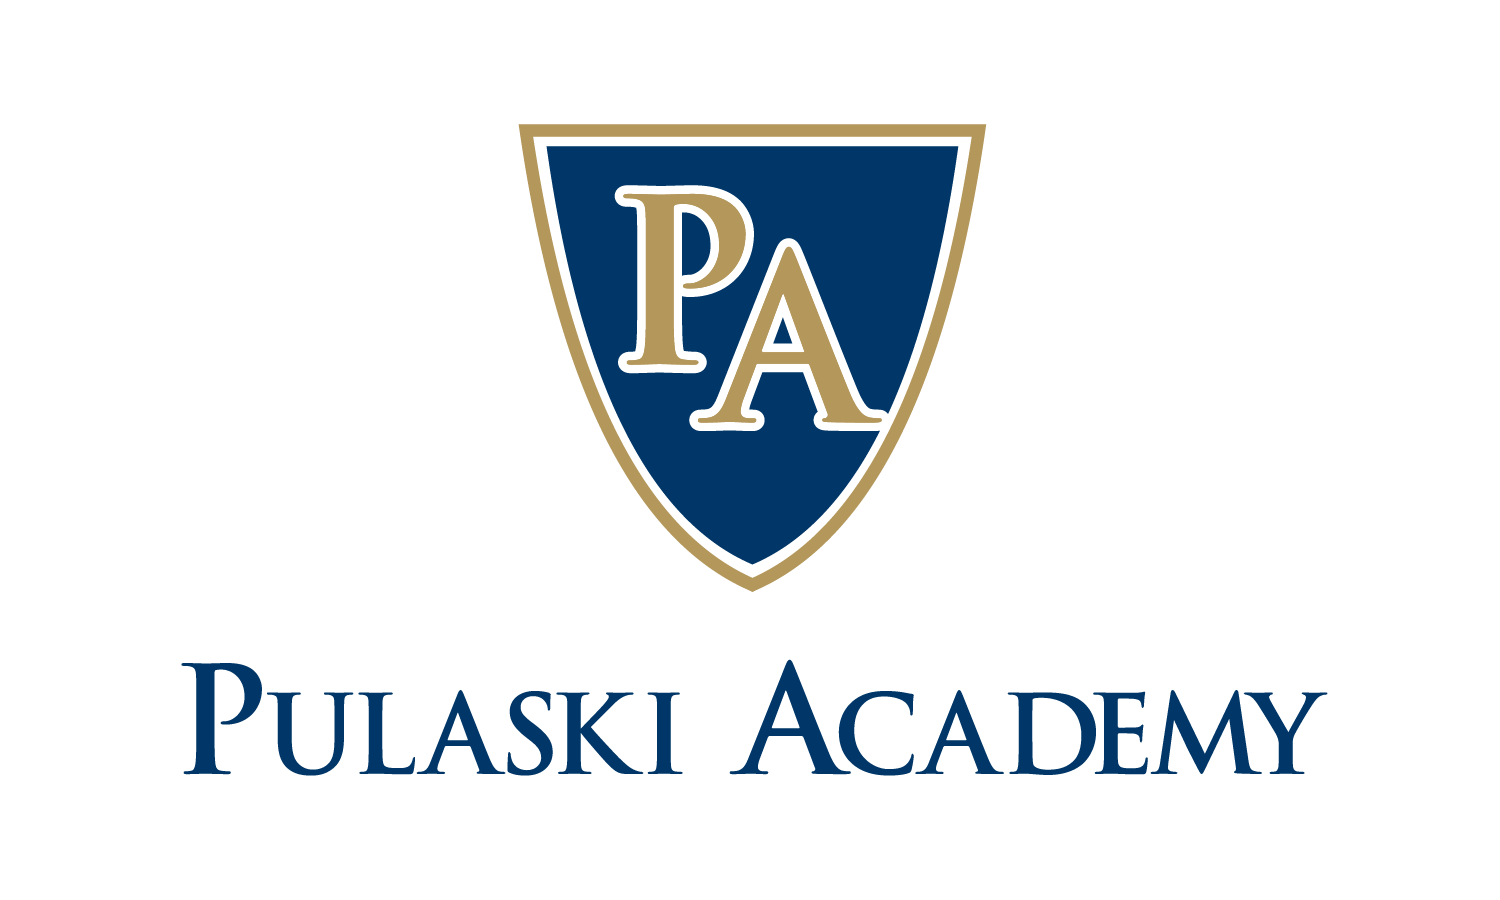 Pulaski Academy